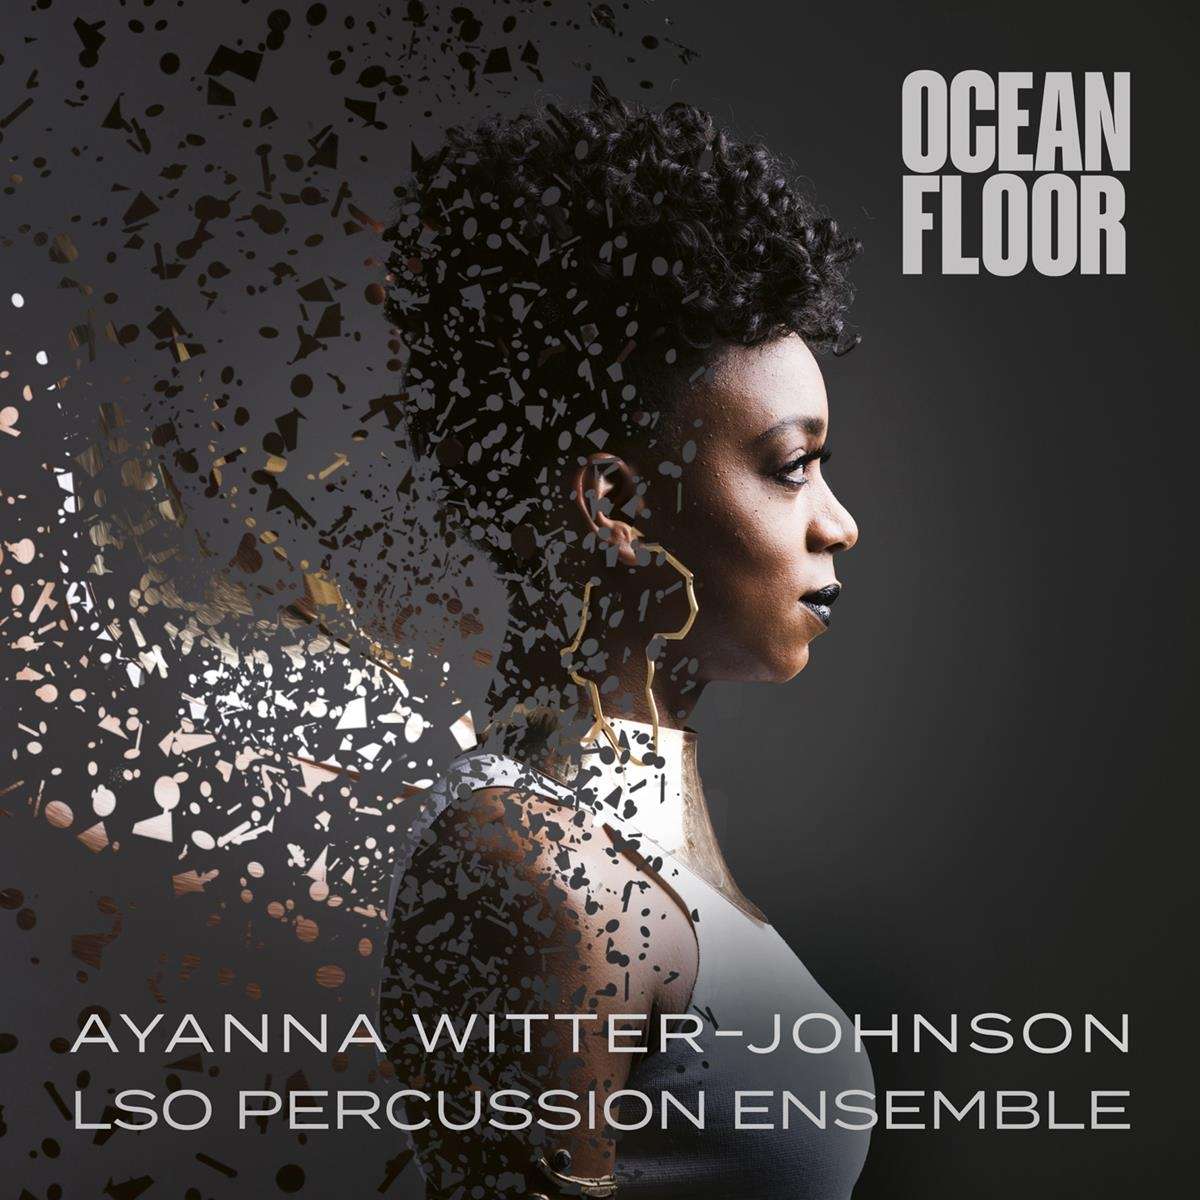 Ayanna Witter-Johnson - Ocean Floor